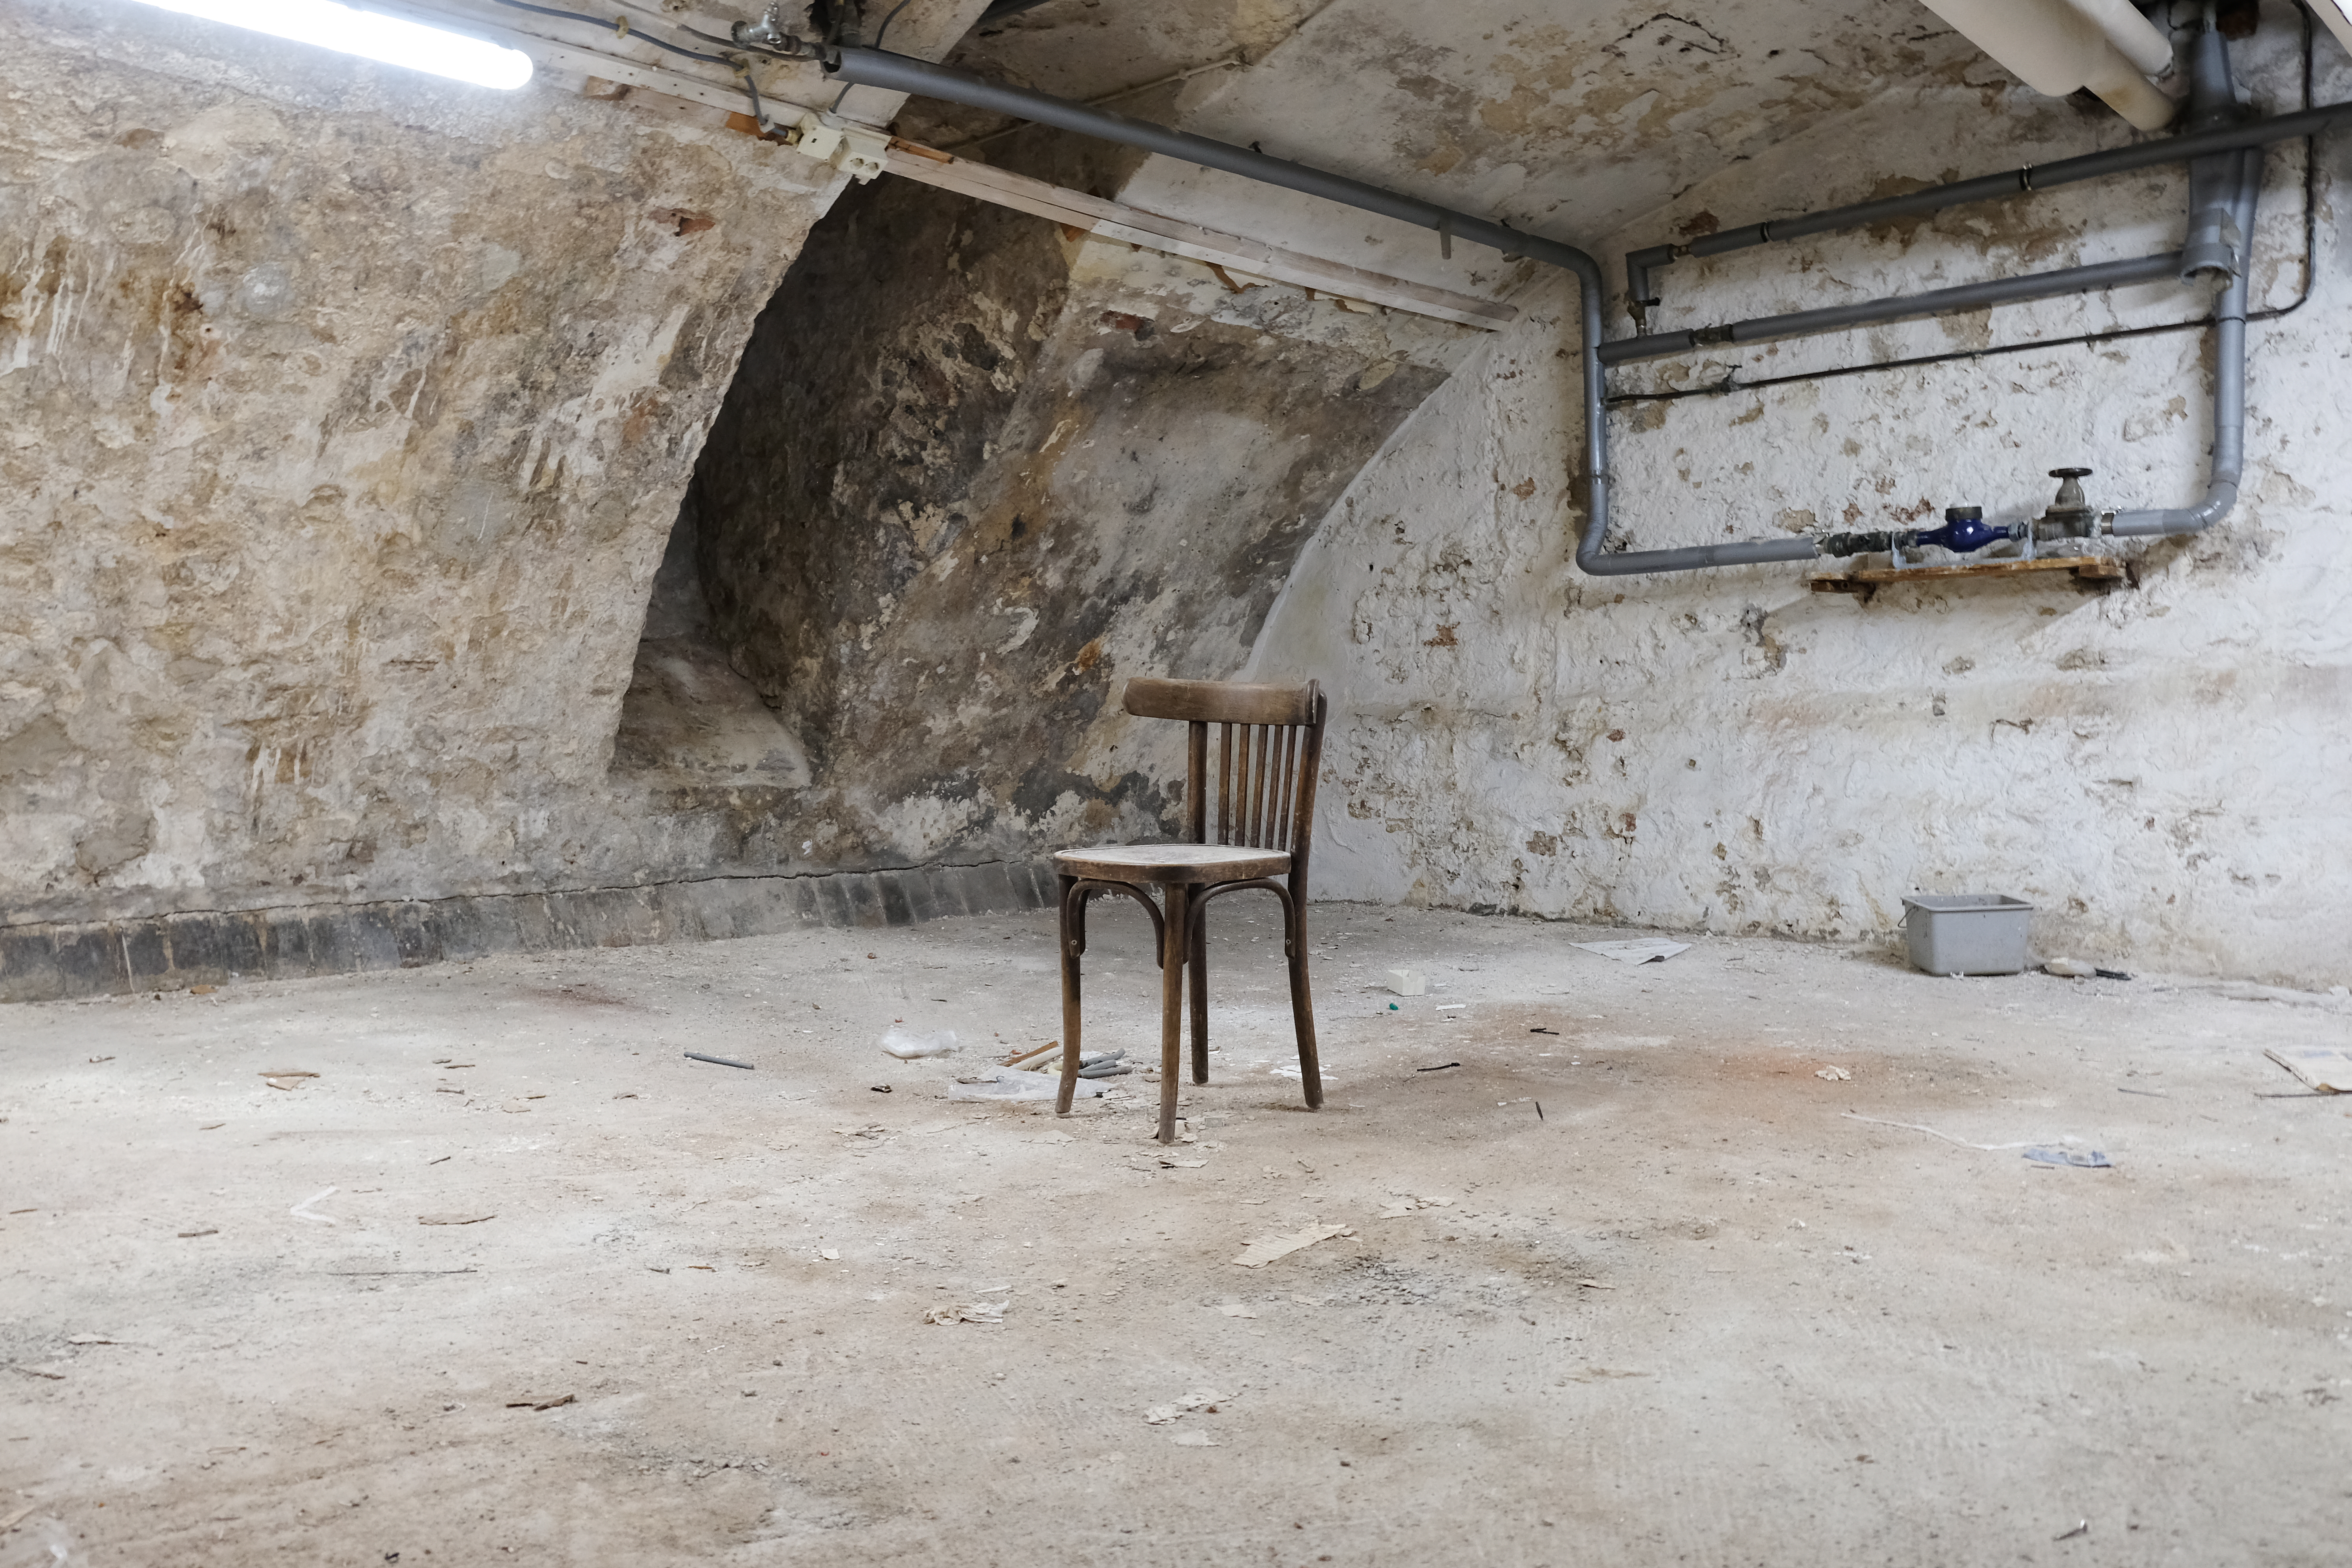 Foto van de kelder. De ruimte is kaal, de vloer en muren bestaan uit stenen en cement. Midden in de ruimte staat een houten stoel onder het stof.